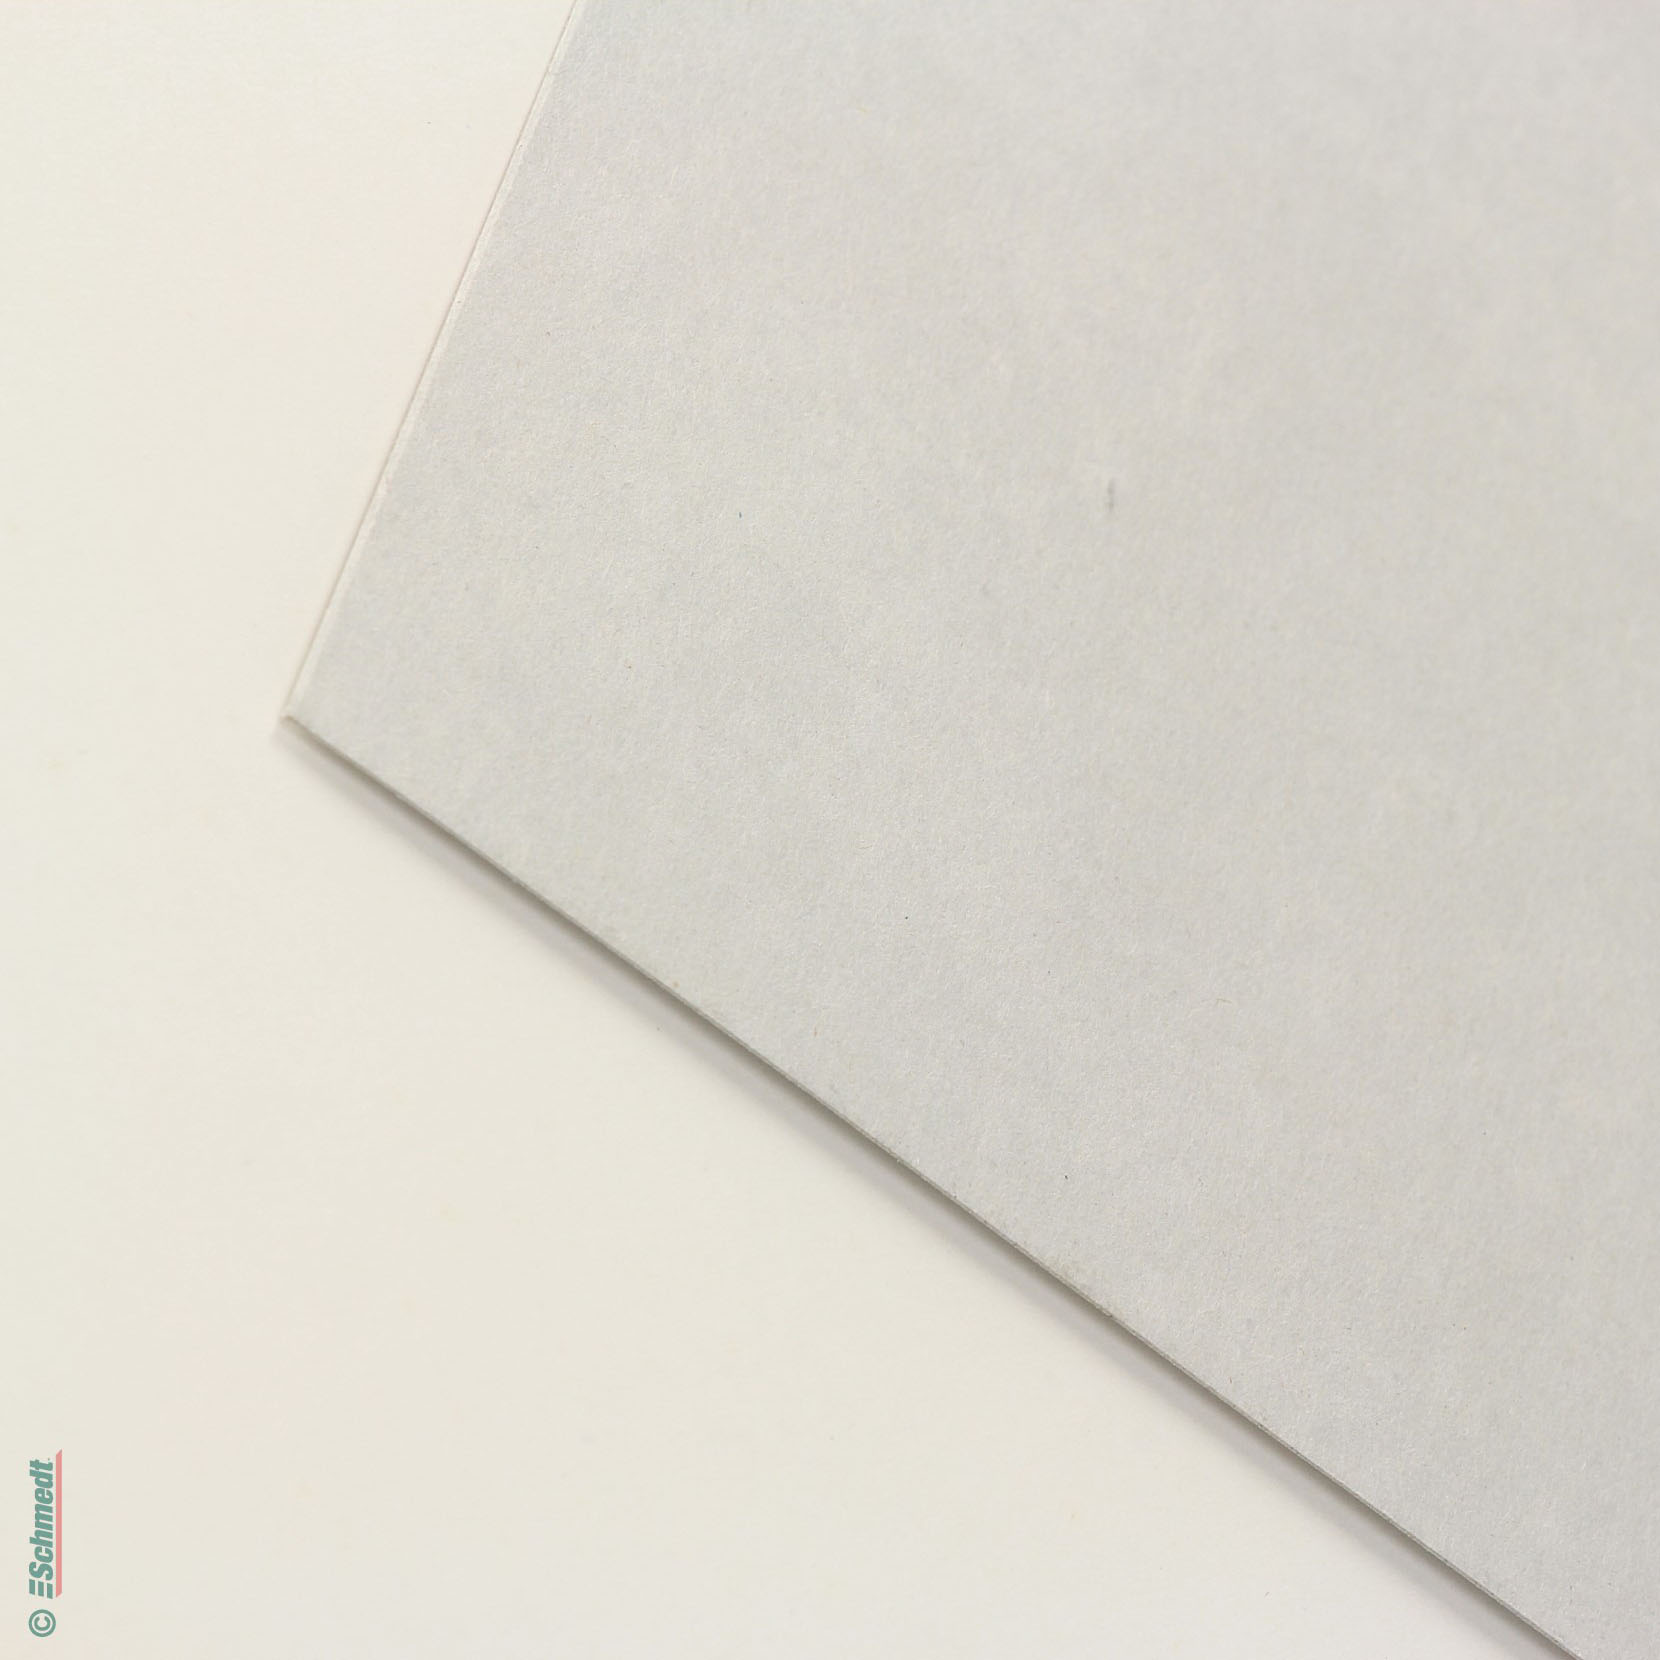 Cartón gris para lomos / venta en kilogramos - de 100 % de papel reciclado - para la confección de tapas de libros, lomos flexibles, calenda... - imagen-1